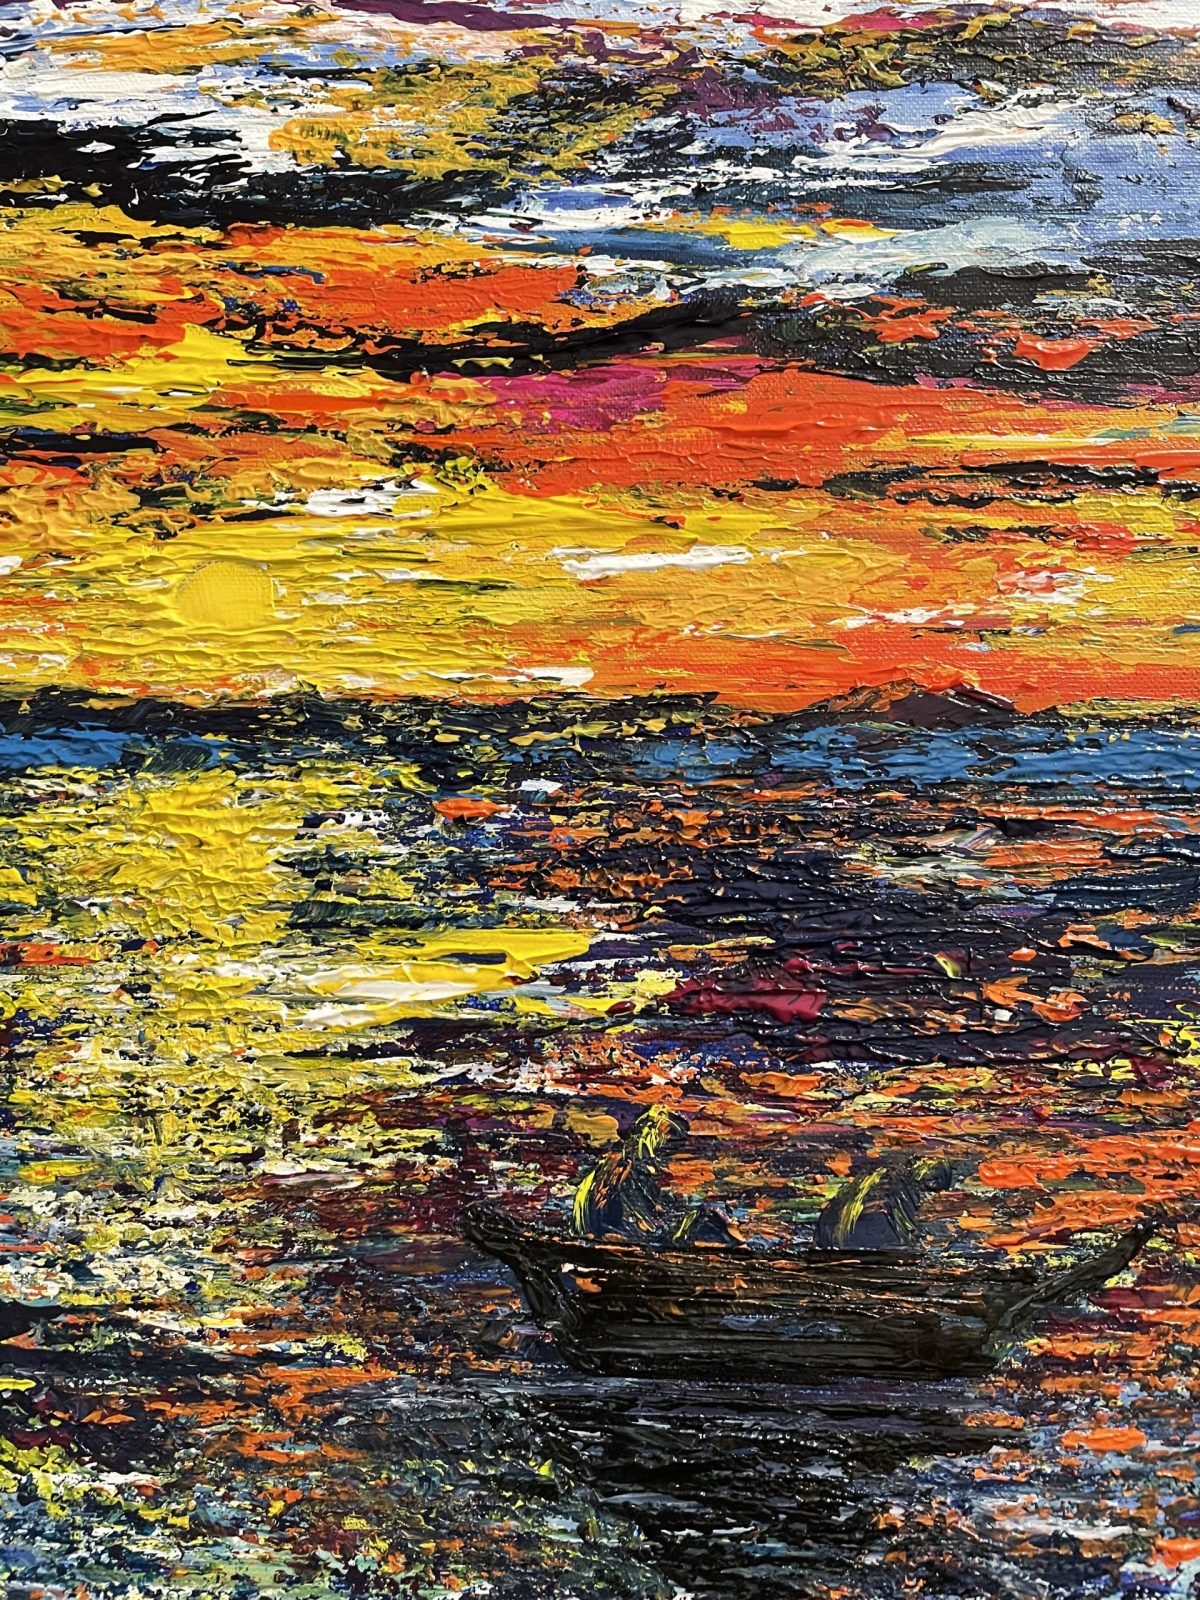 "La pêche au lever du soleil" centre du tableau (paysage marin avec le bateau des pêcheurs)